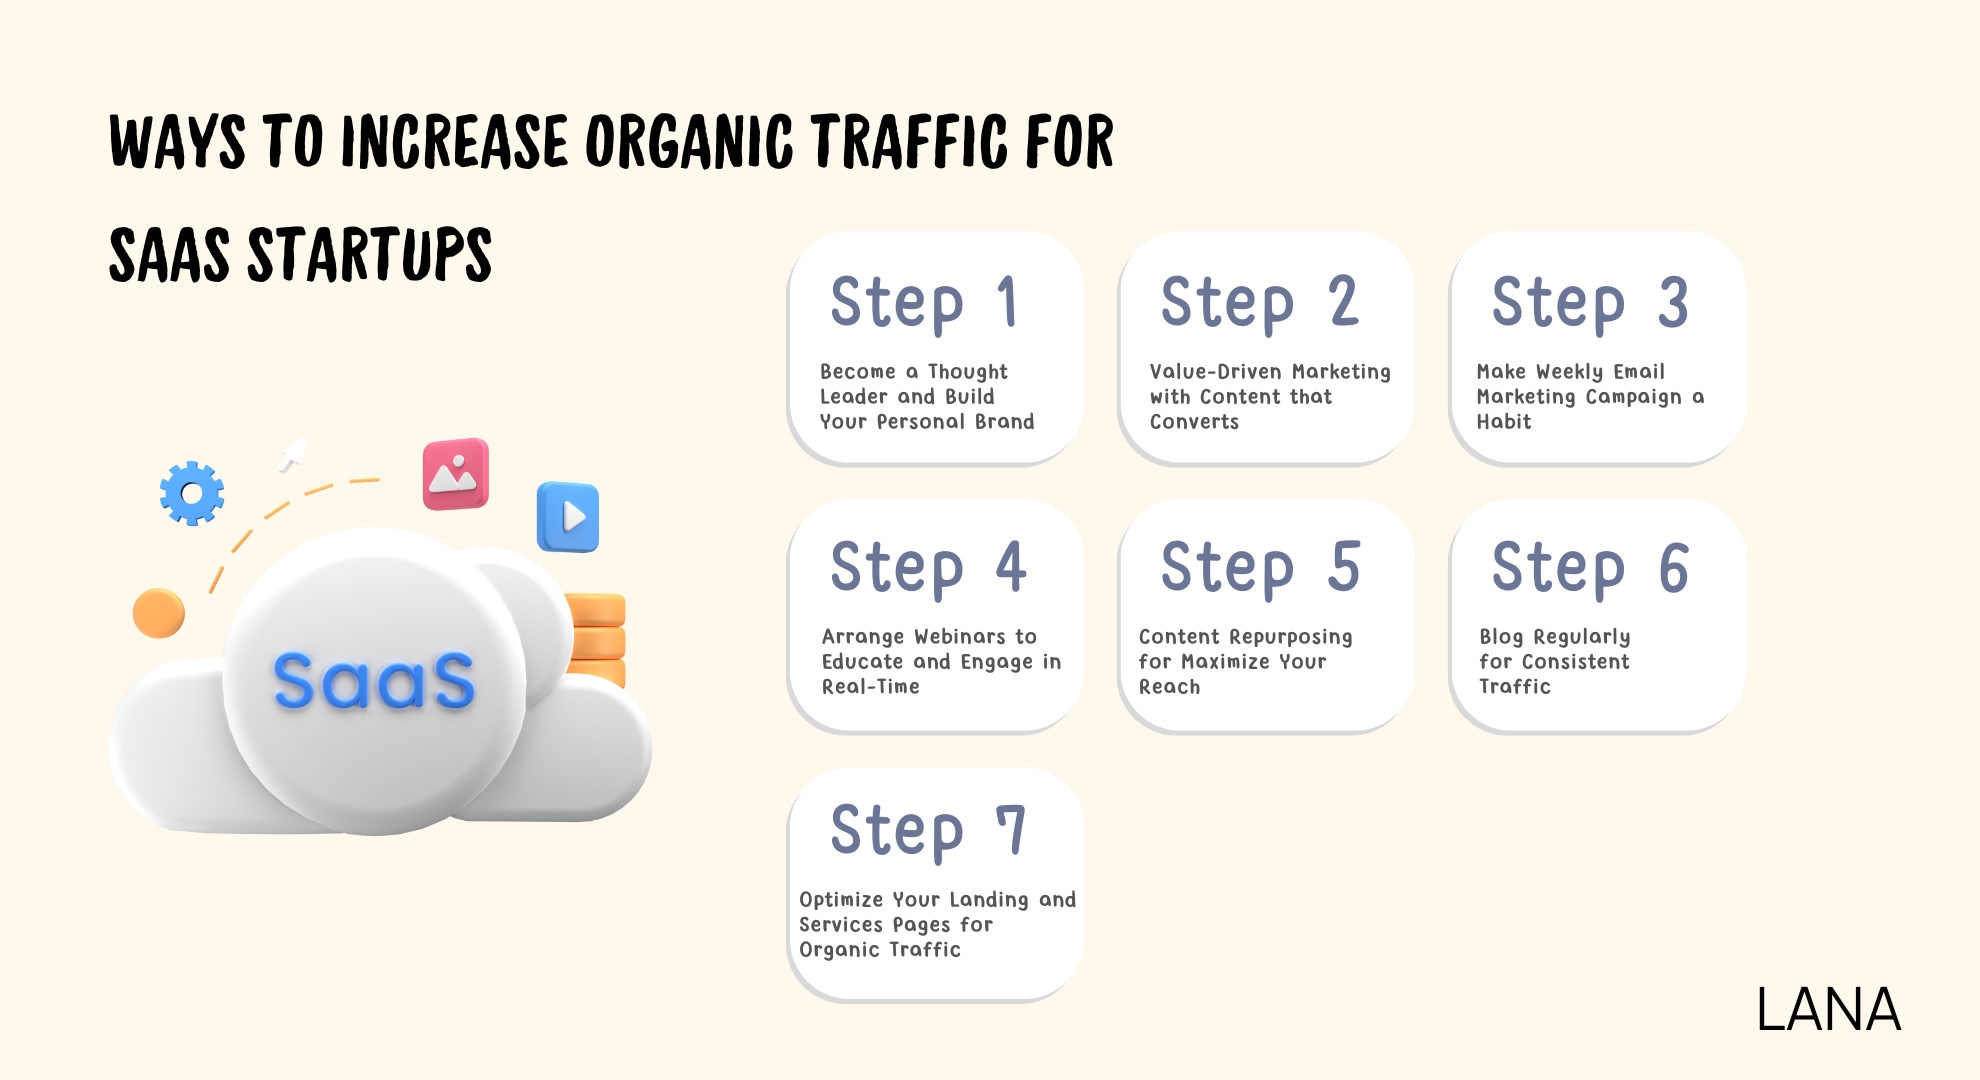 Ways to Increase Organic Traffic for SaaS Startups